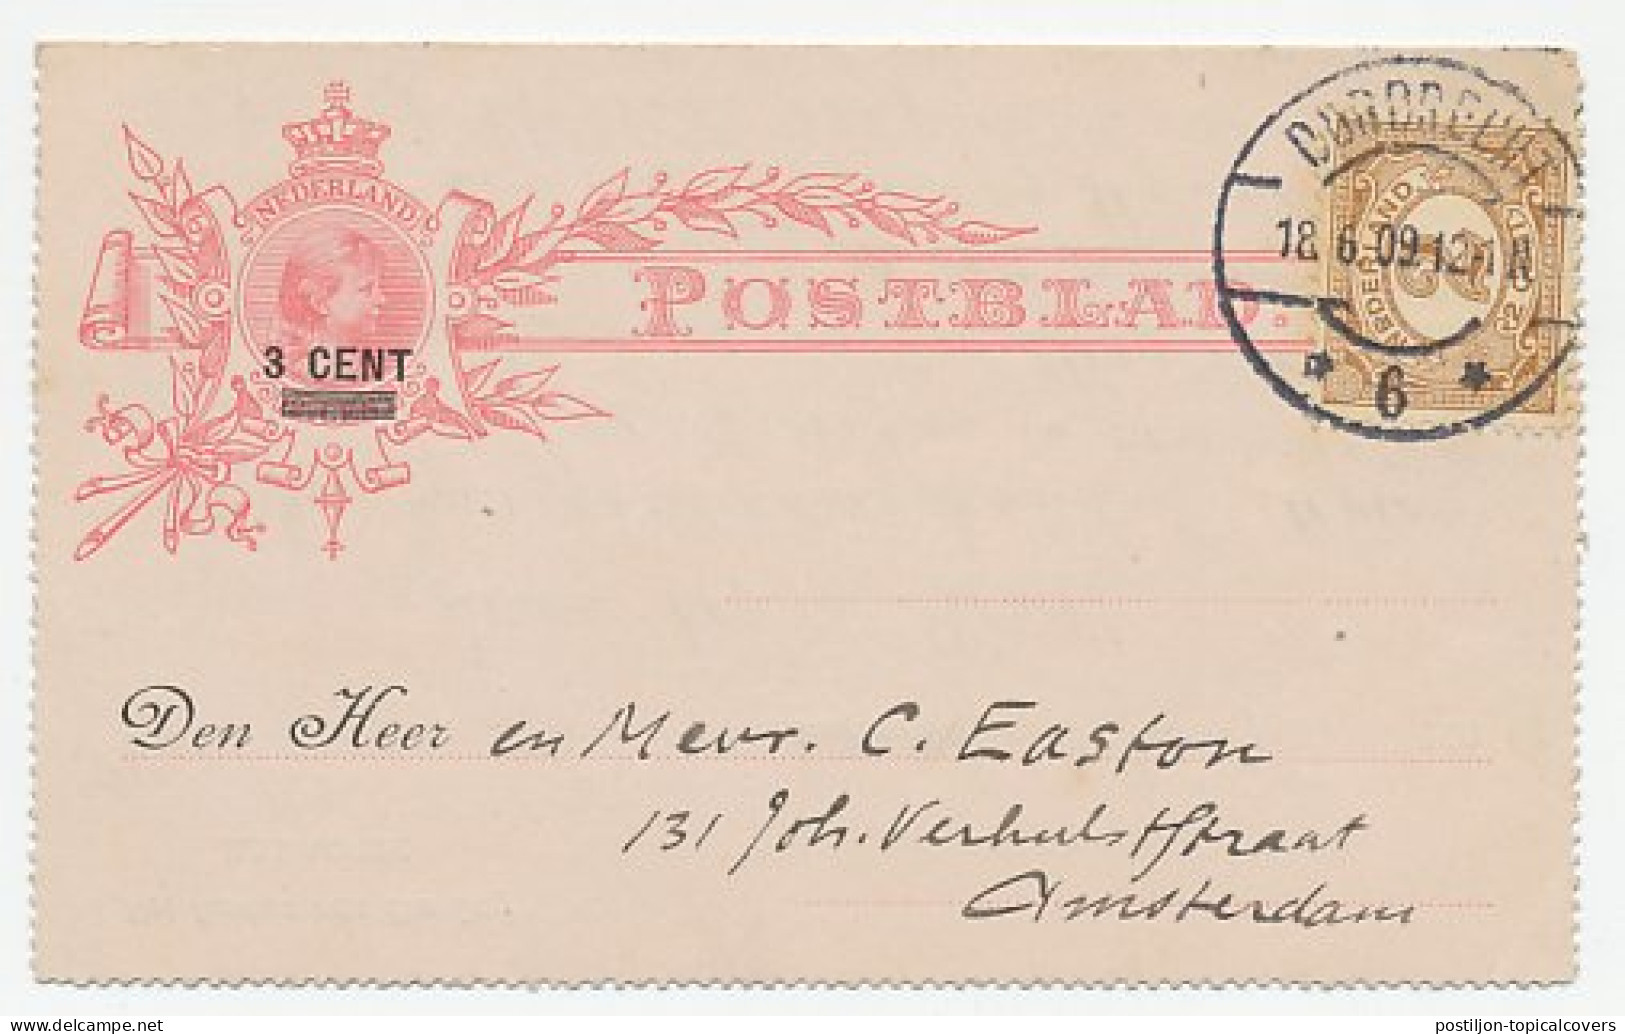 Postblad G. 9 / Bijfrankering Dordrecht - Amsterdam 1909 - Ganzsachen